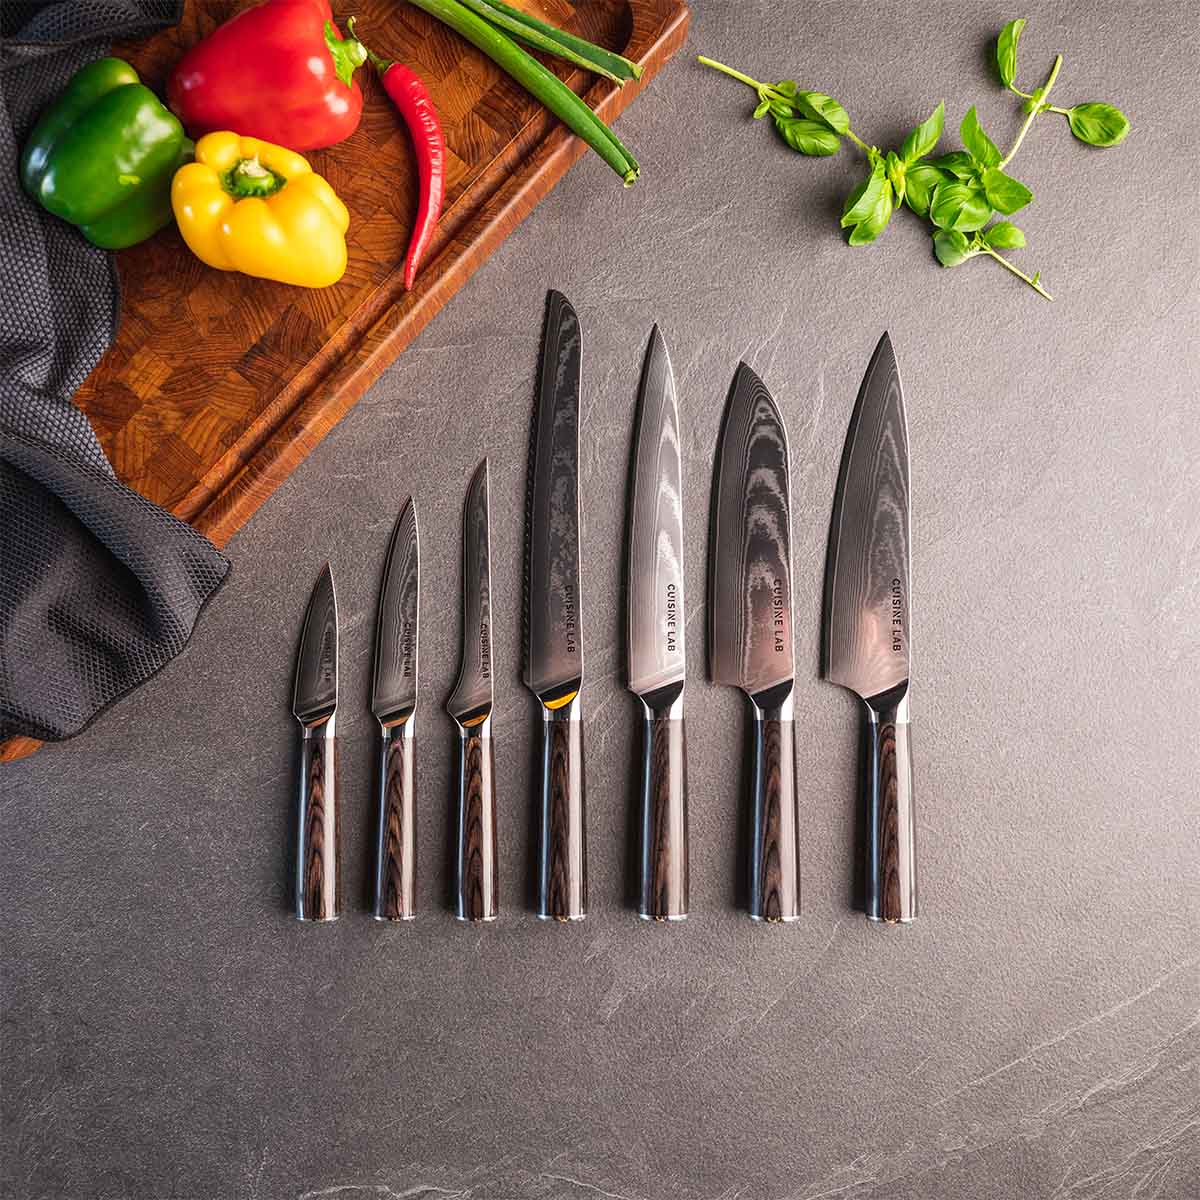 Cuisine Lab køkkenknive, classic collection. Luksusknive med lang holdbarhed. Kokkekniv, brødkniv, santokukniv, forskærekniv, udbenerkniv, utilitykniv, urtekniv.